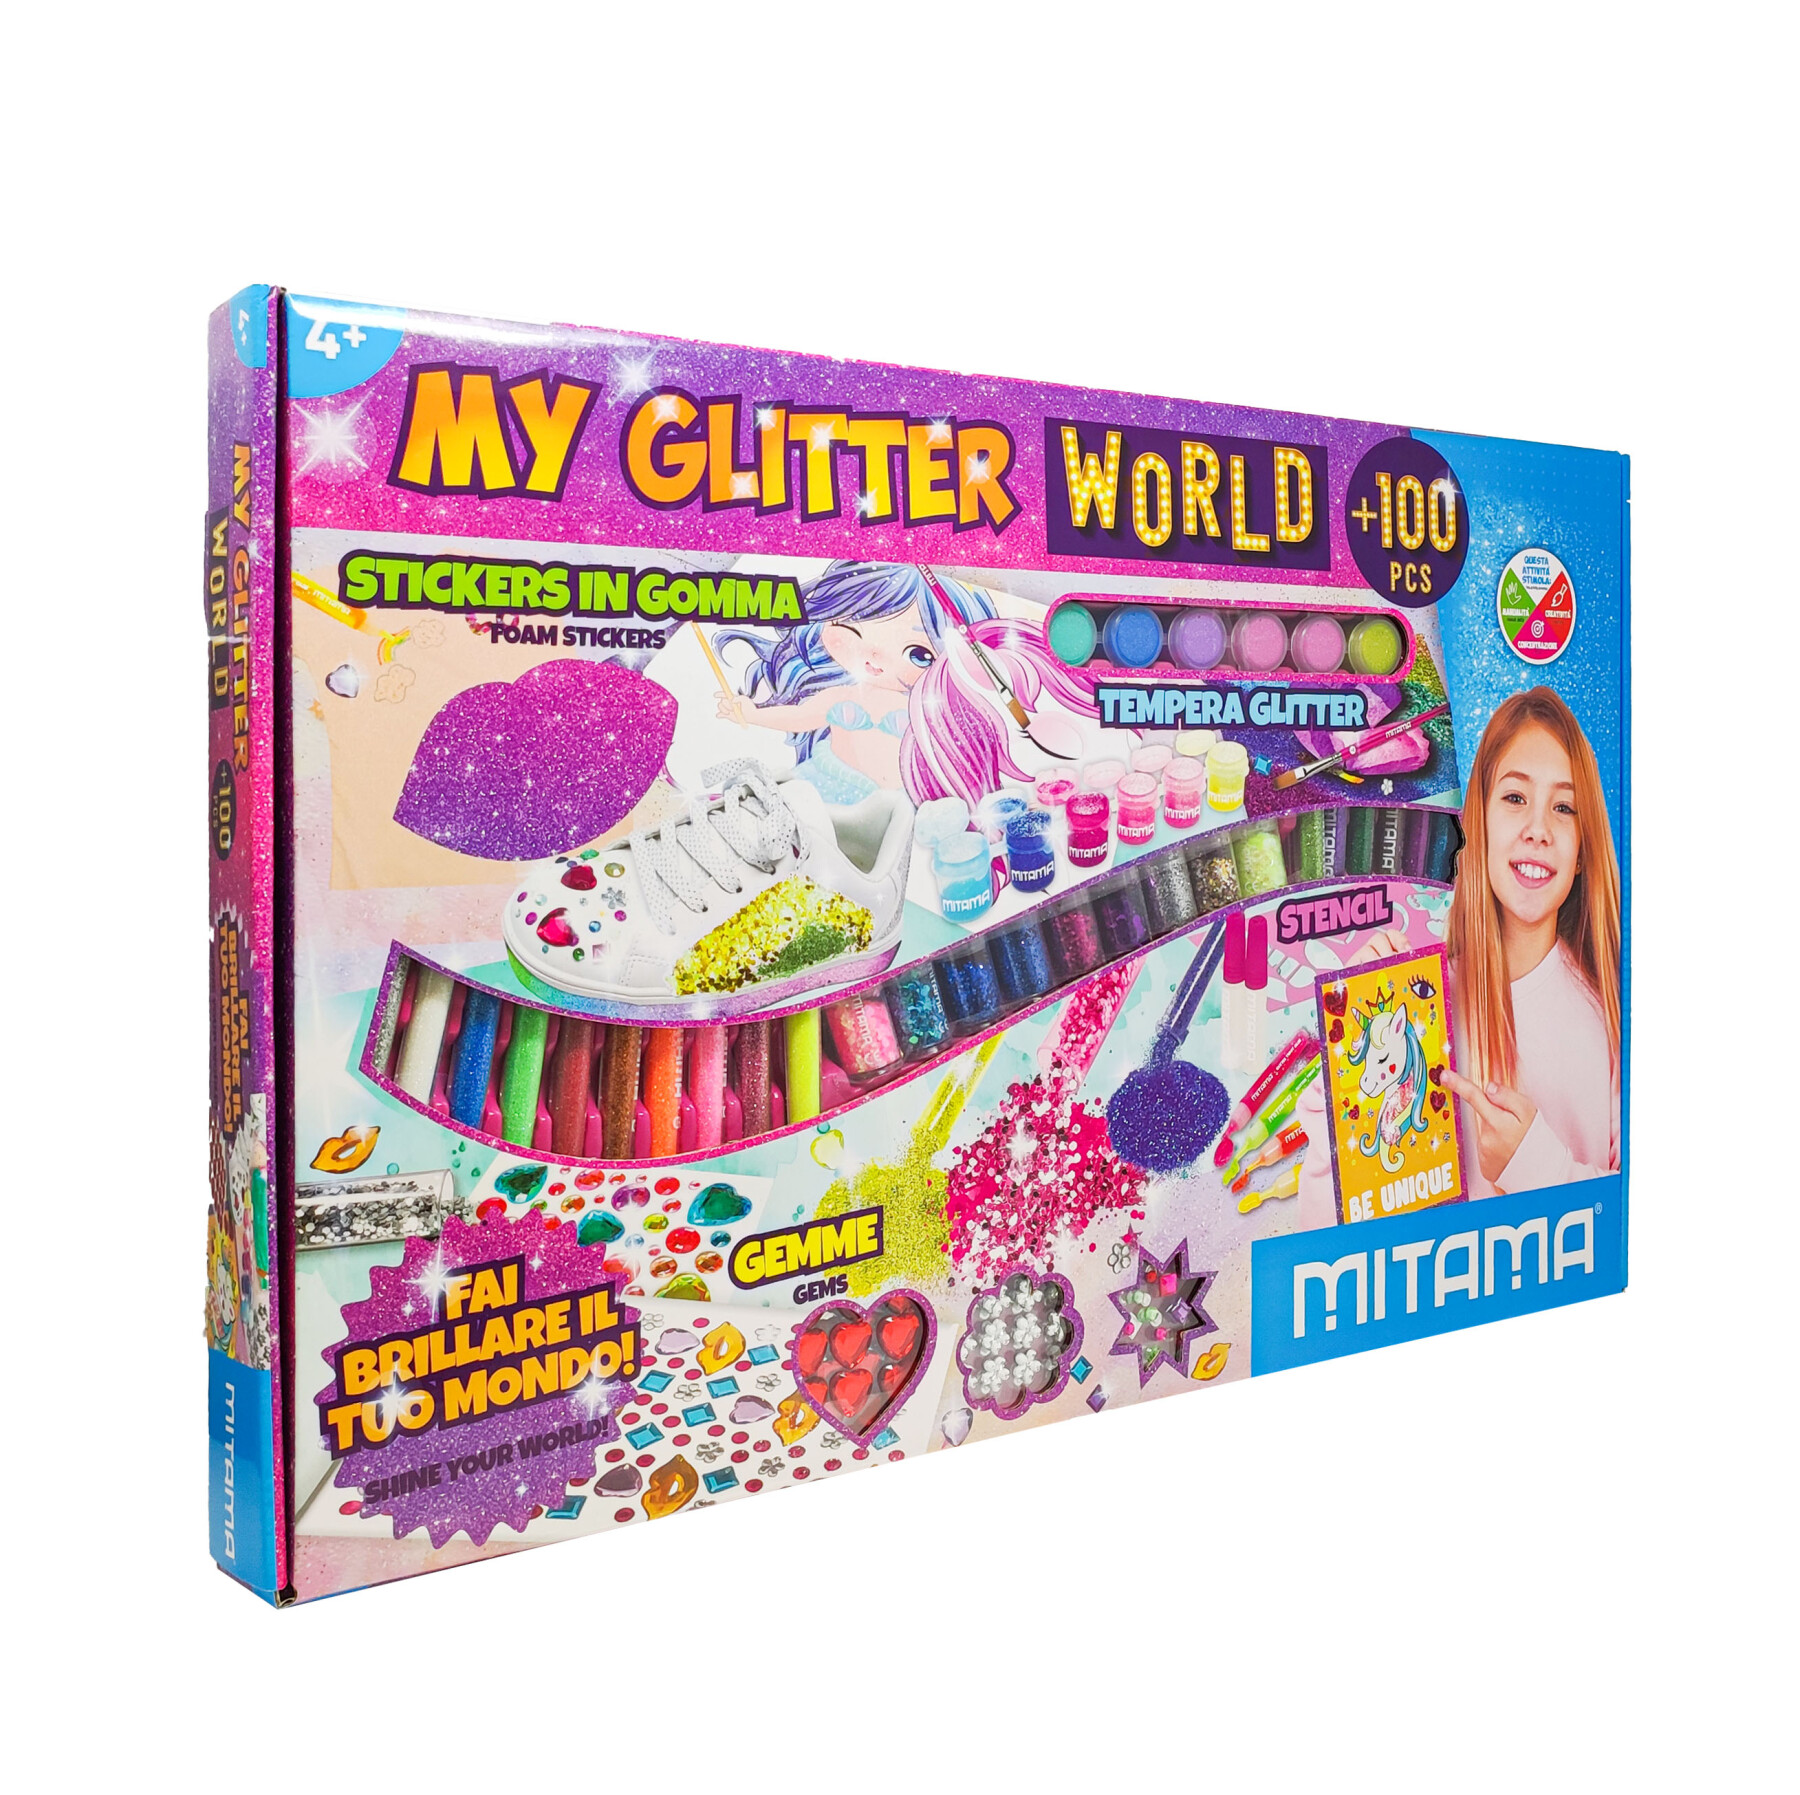 My glitter world  +100pz, scatola creativa con glitter. - 